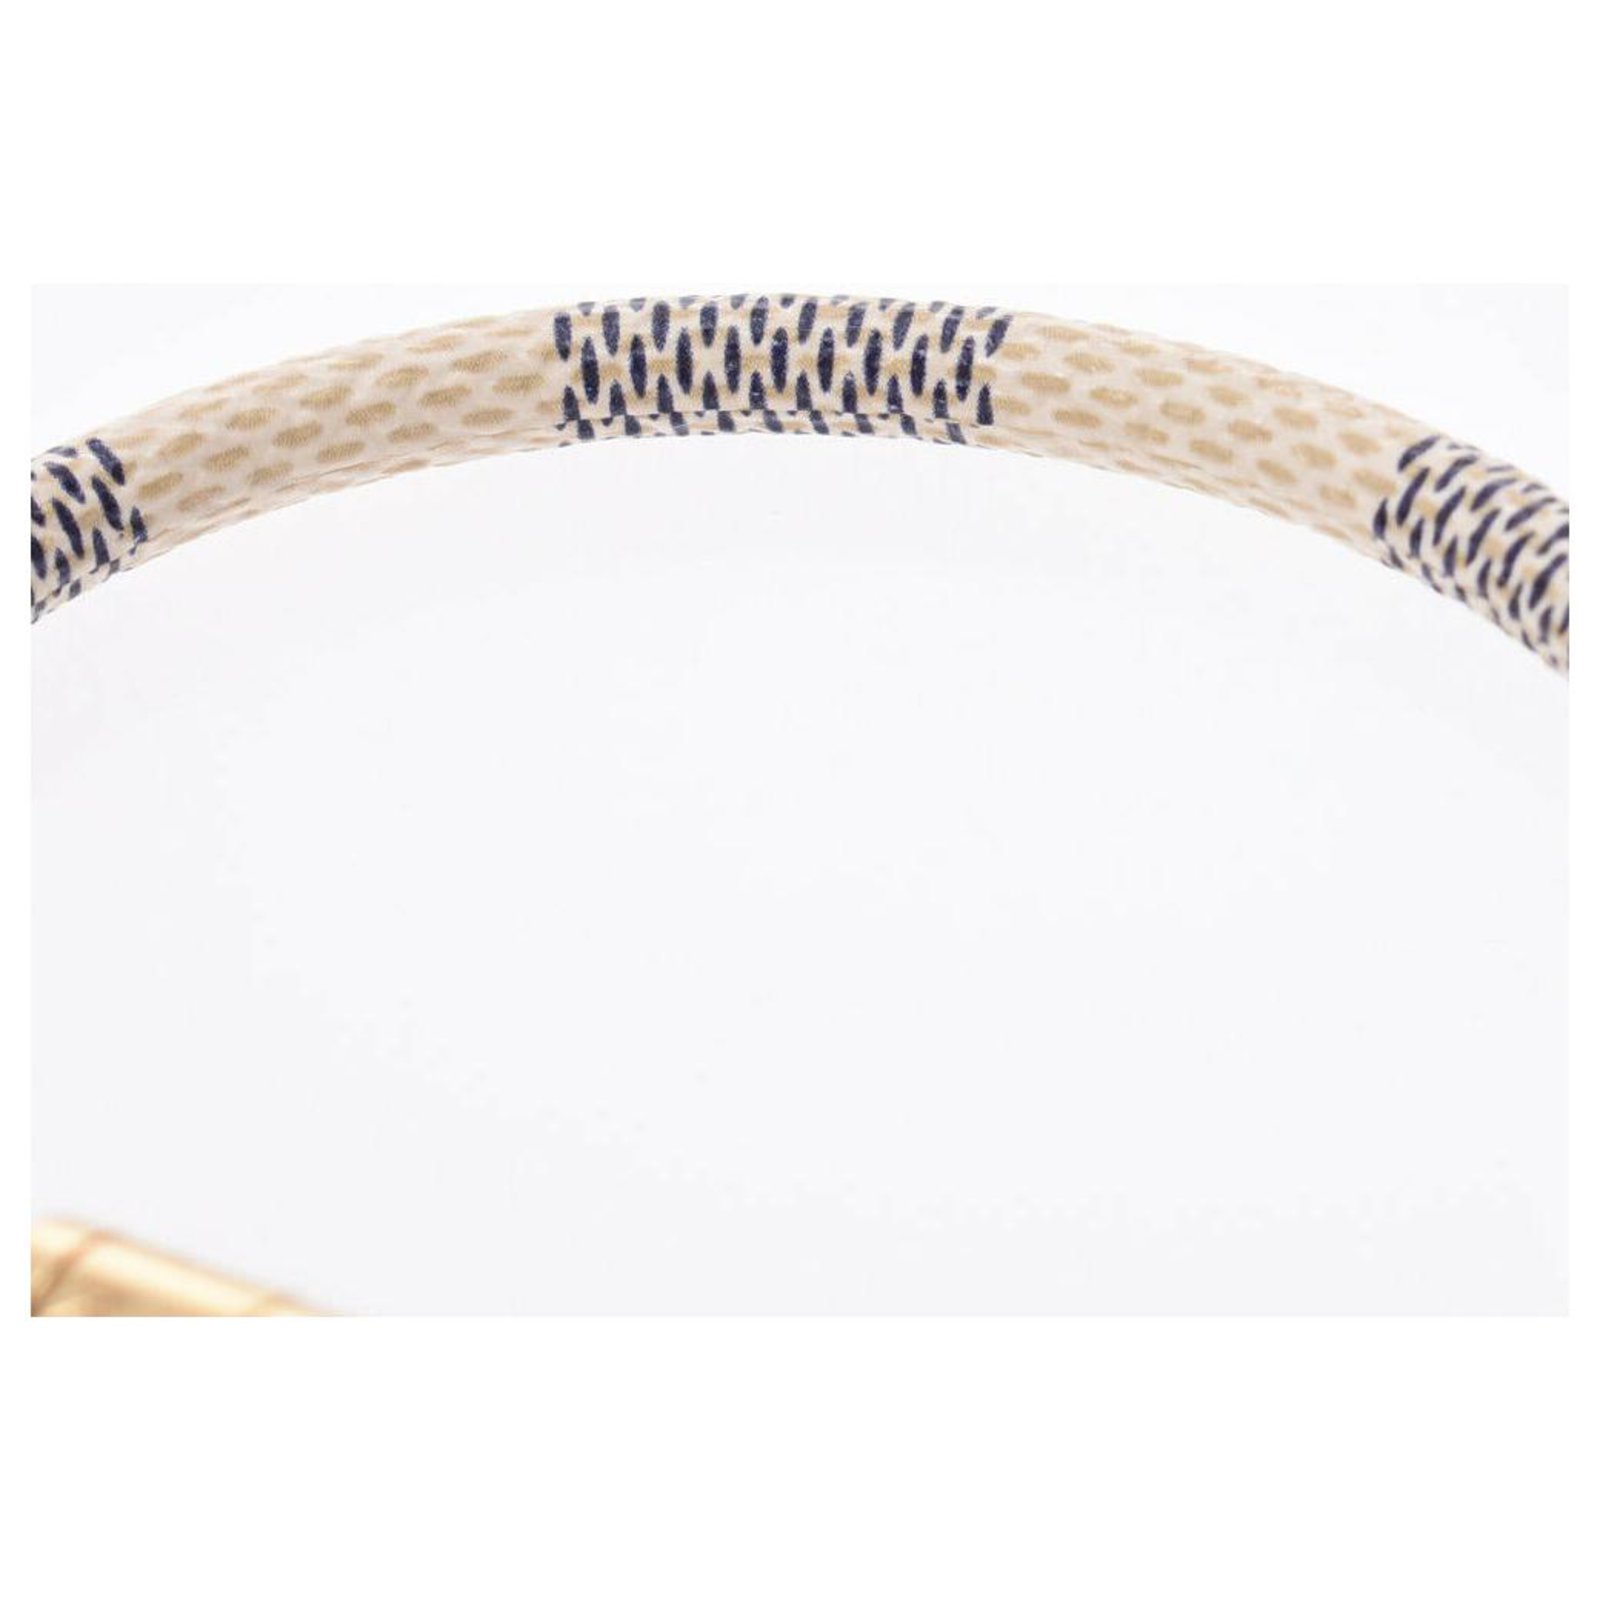 WGACA Louis Vuitton Serrure Bracelet - White / Multi – Kith